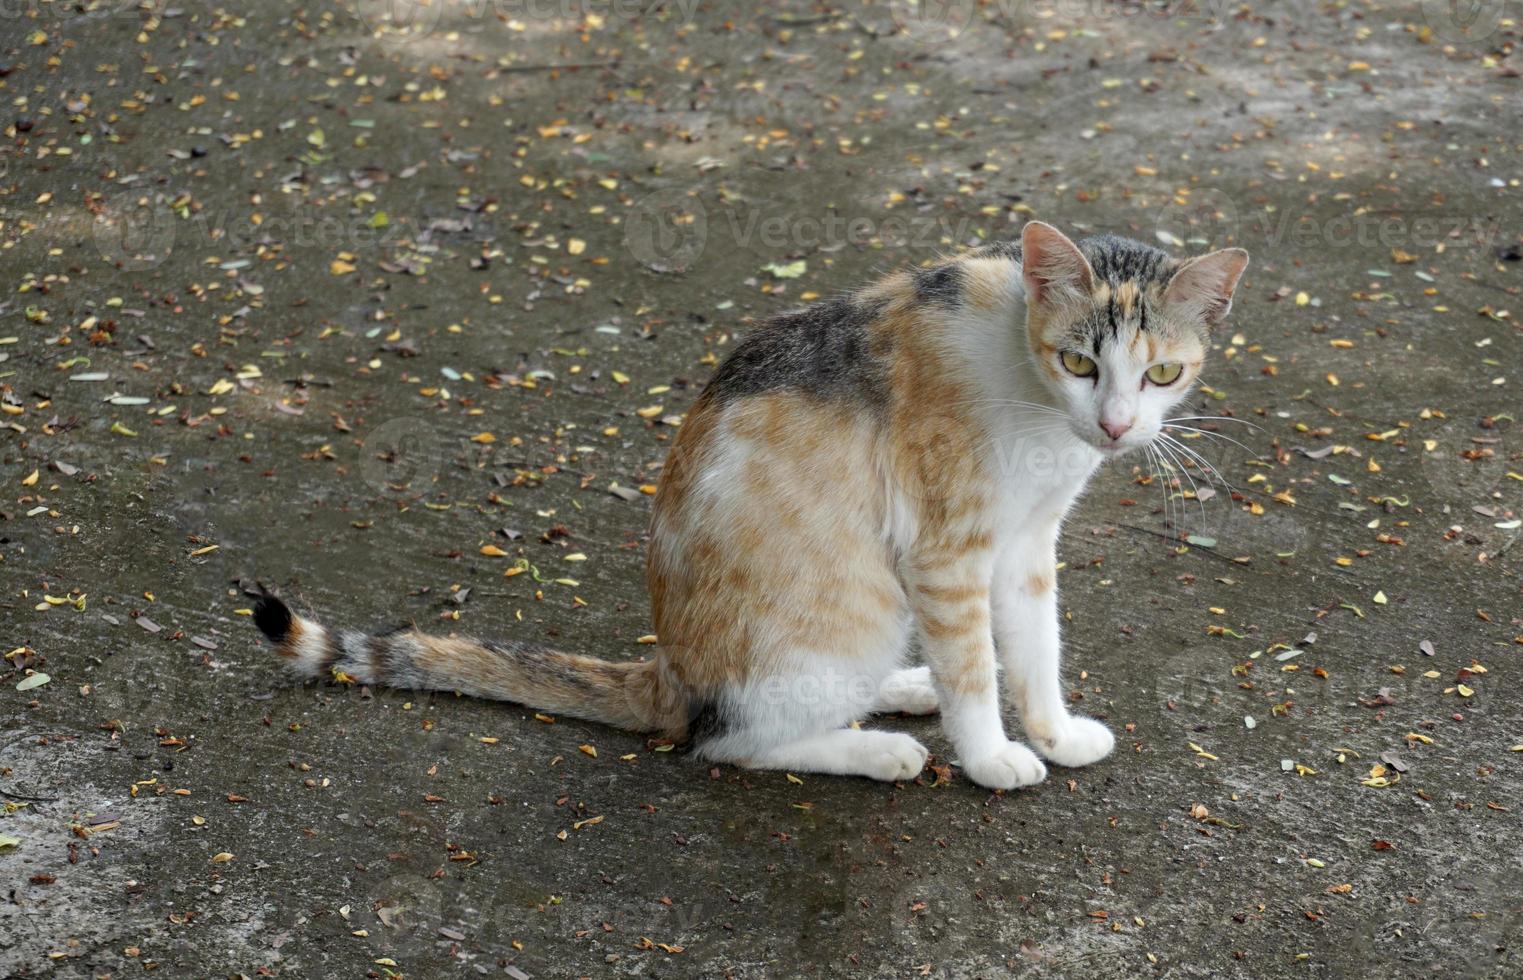 Calico cat consta de 3 tonos principales, naranja, negro y blanco, pero los tres tonos tienen diferente intensidad y luminosidad. esto hace que en el mundo no haya dos gatos tricolores con el mismo estampado. foto